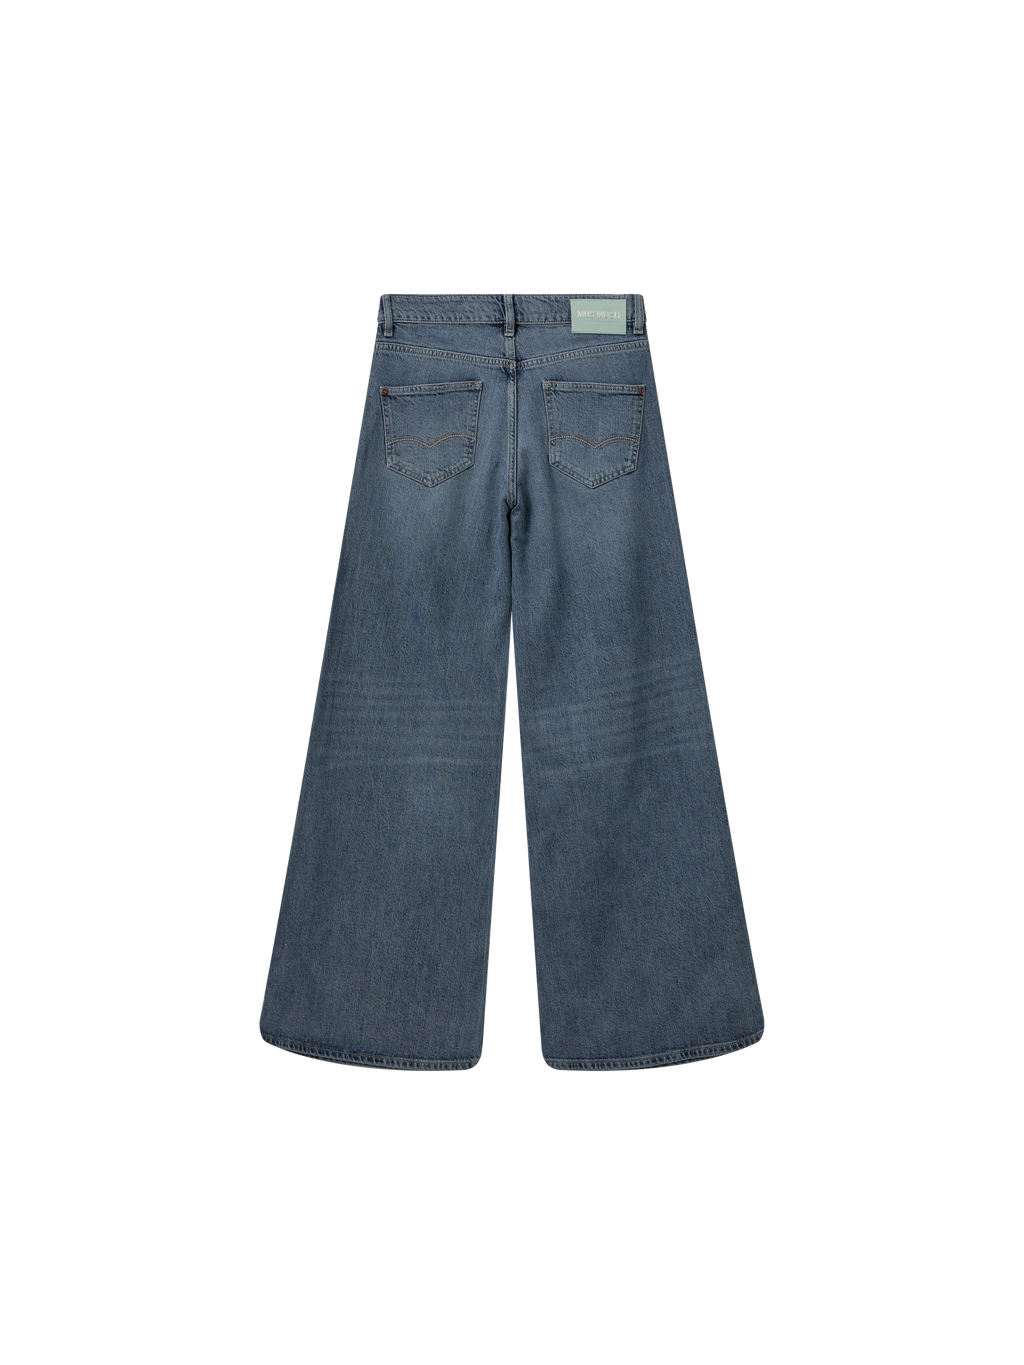 jeans | HAILEE JEANS - denim